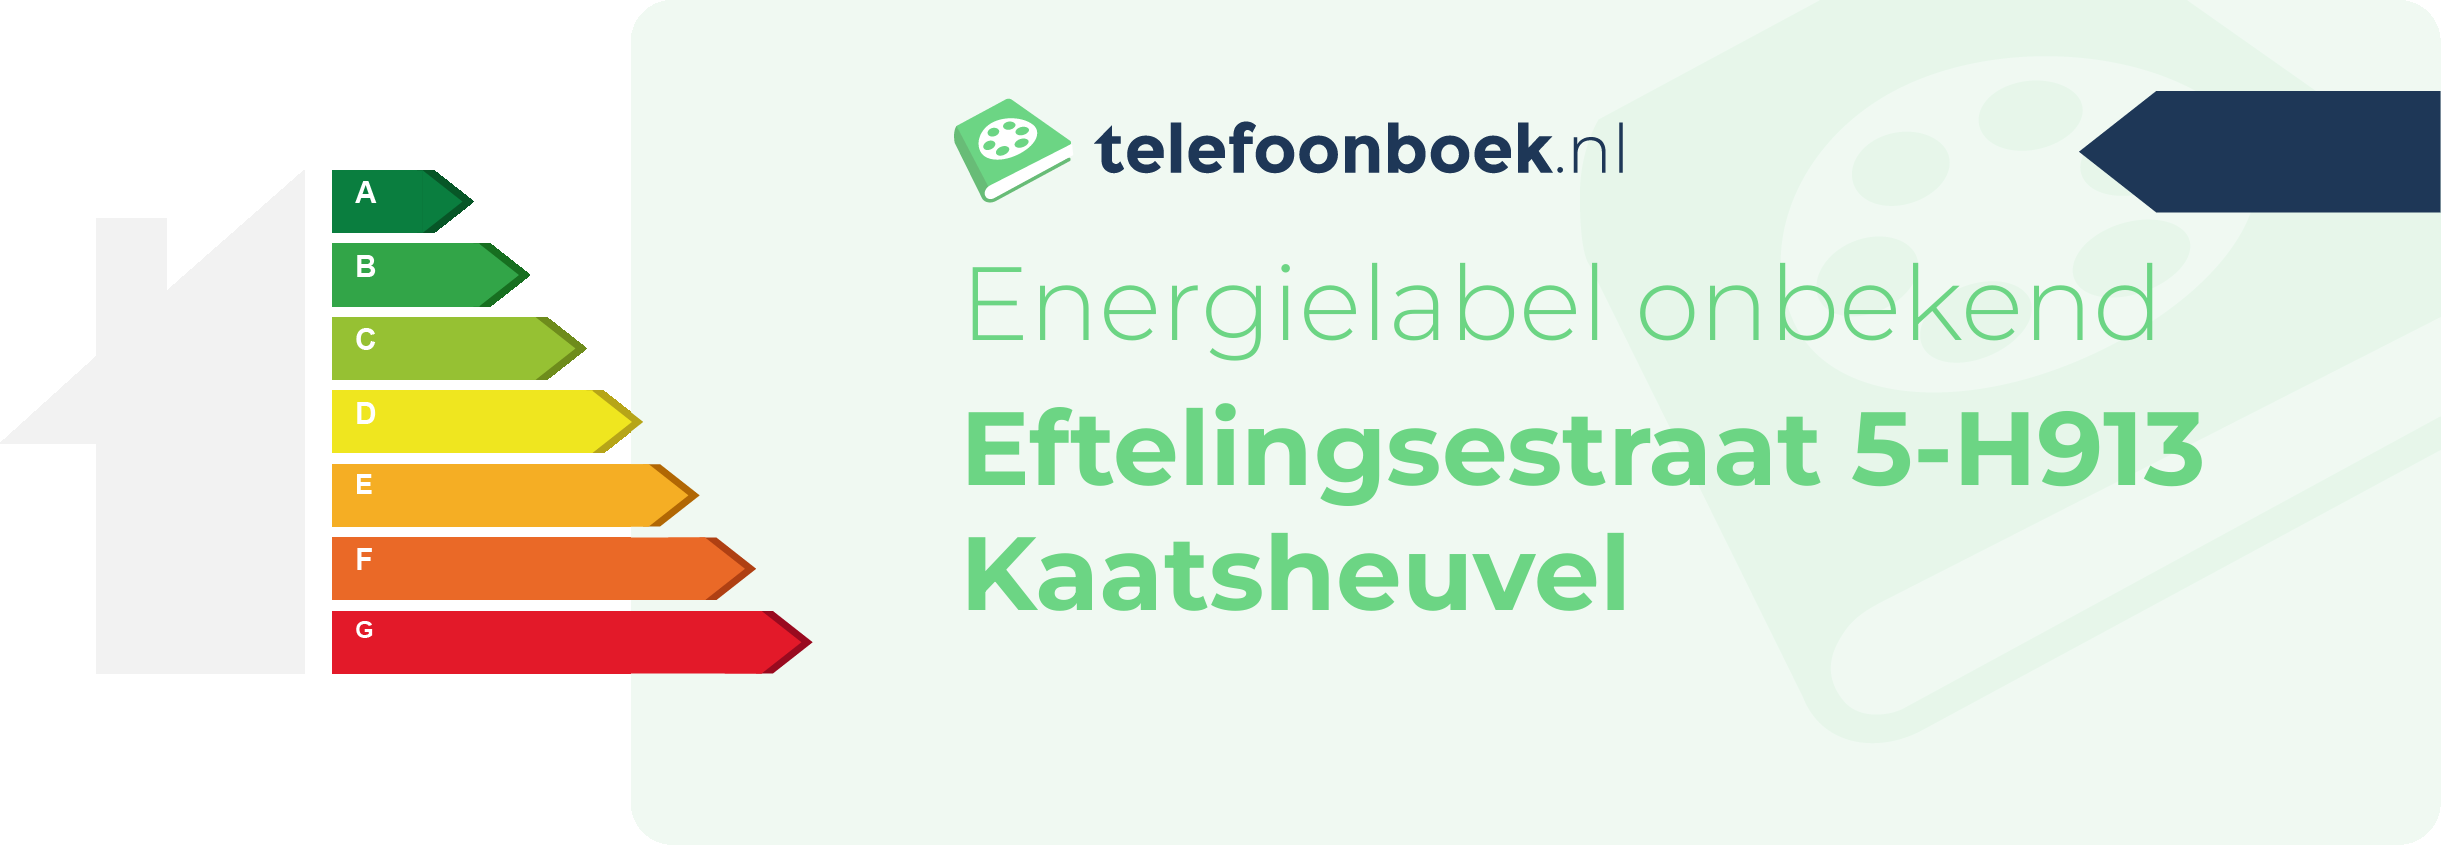 Energielabel Eftelingsestraat 5-H913 Kaatsheuvel